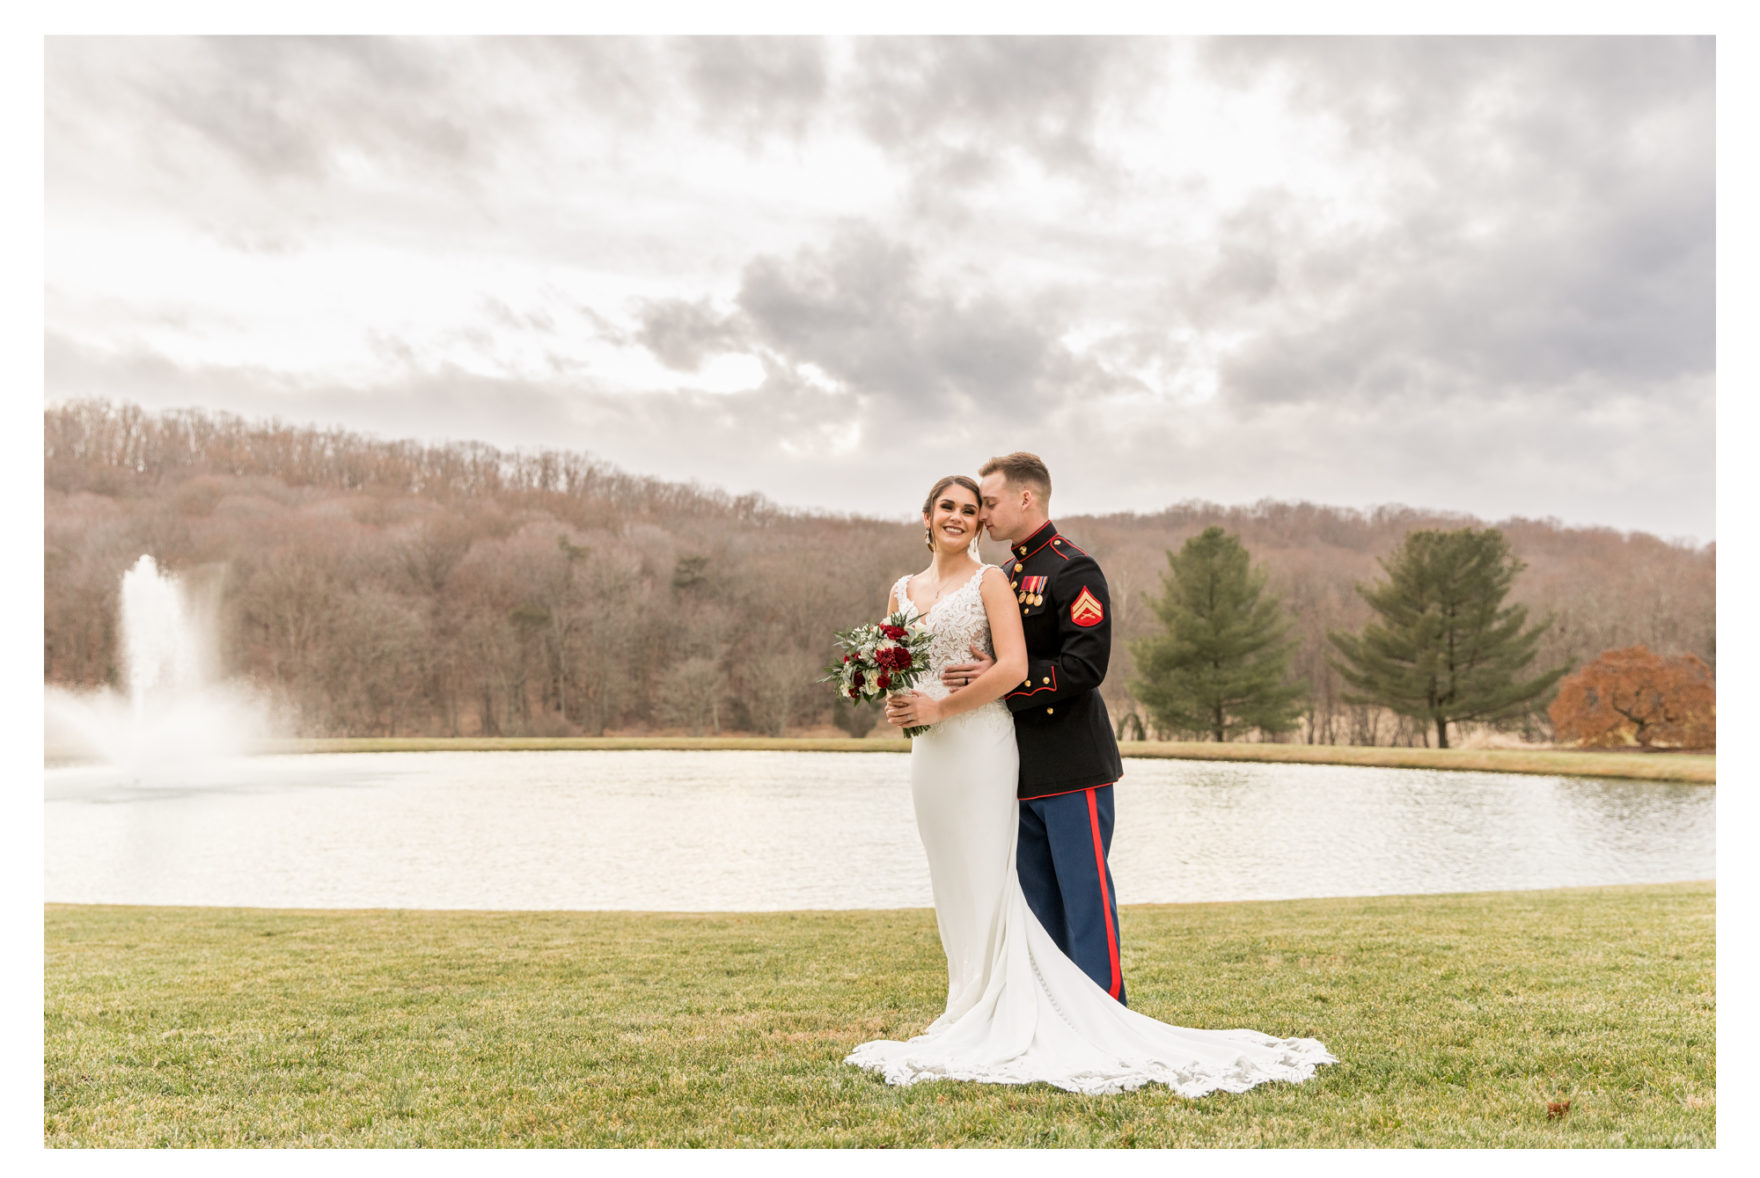 Winter Wedding. Warm winter wedding. Forest Hill Maryland. Fallston Maryland. Military Wedding. Marine Wedding. Stone Ridge Hollow. Barn Wedding. Farm Wedding. 